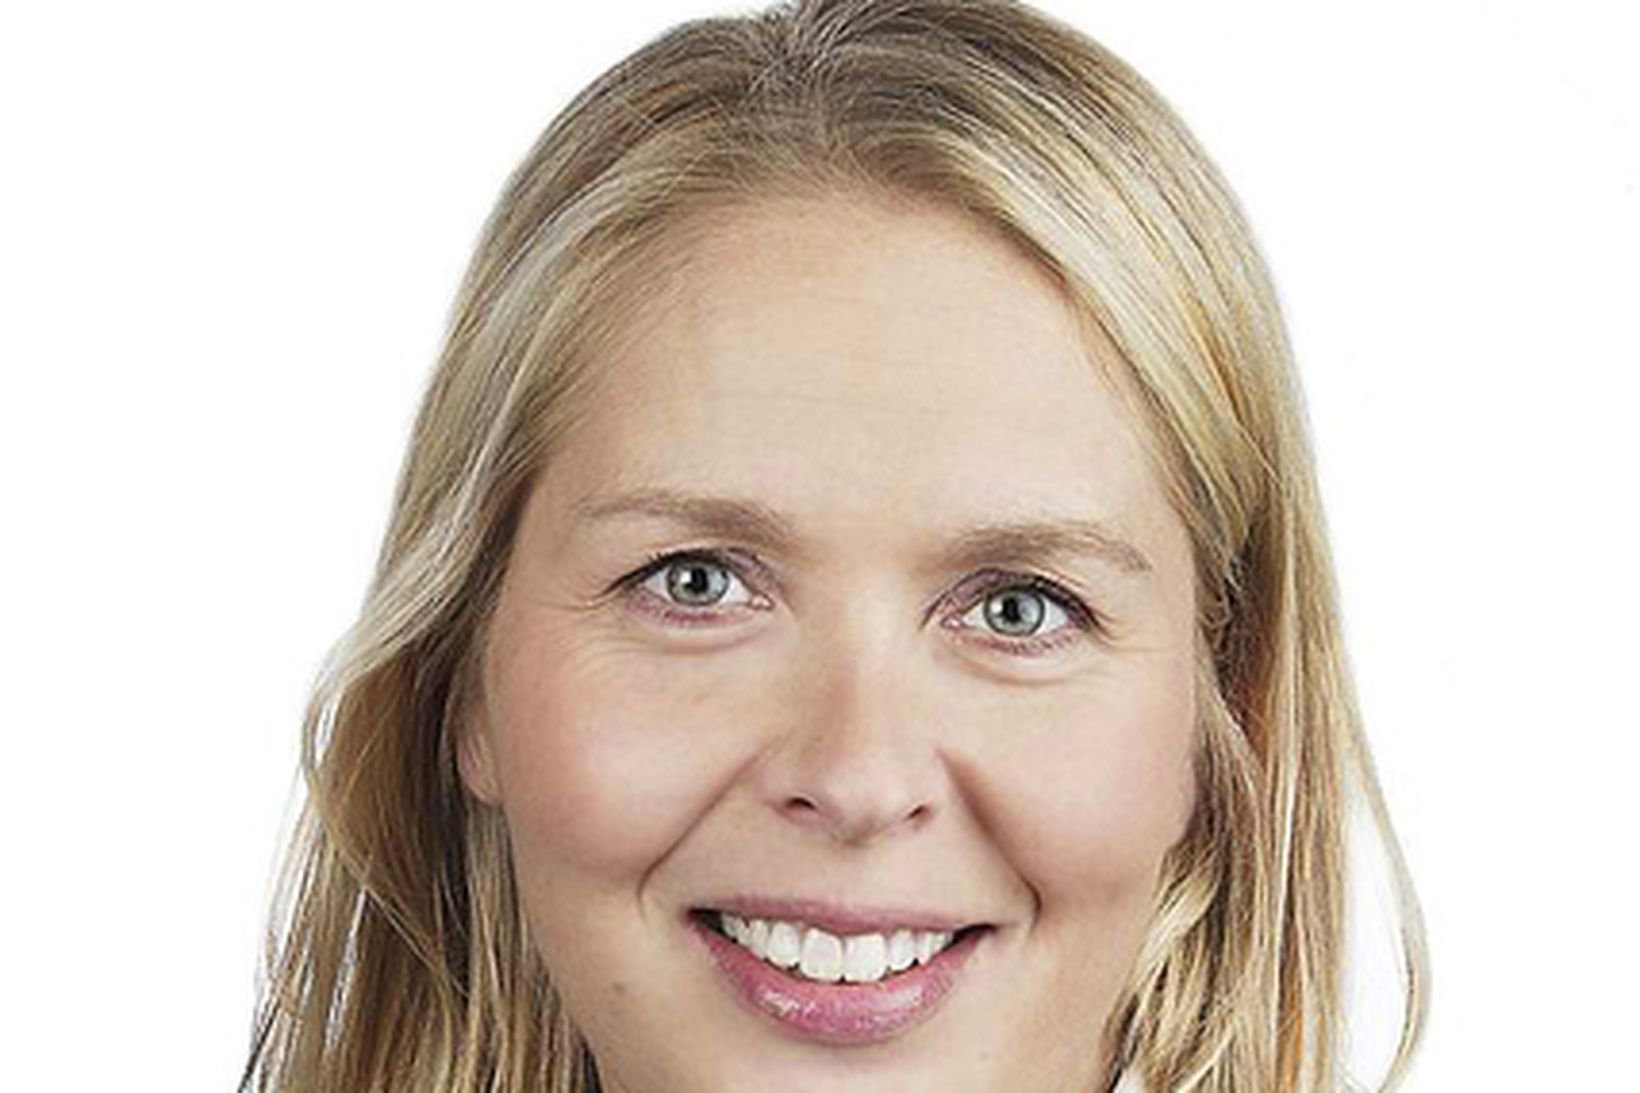 Sveinbjörg Birna Sveinbjörnsdóttir